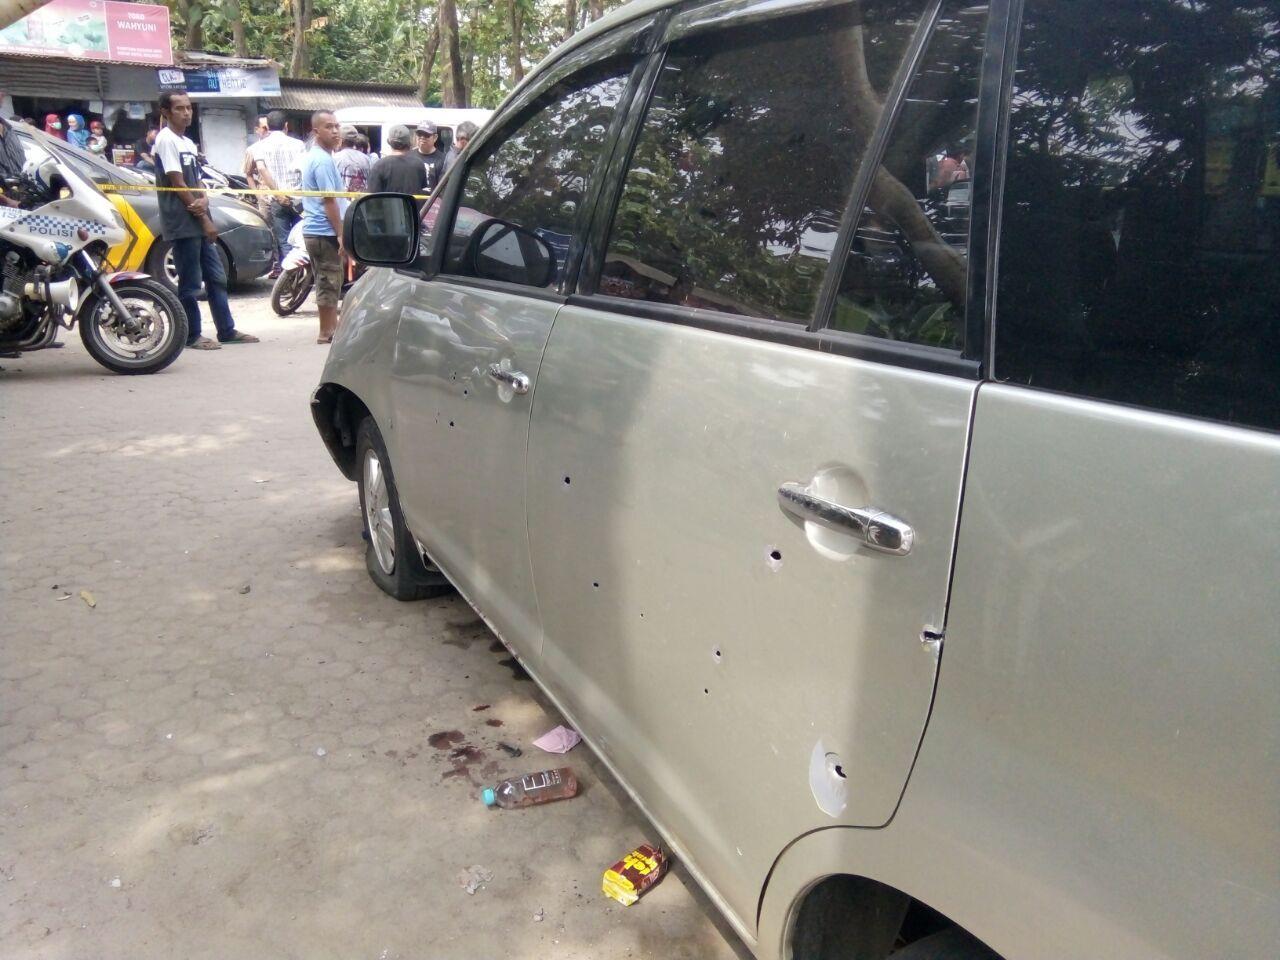 Mobil yang ditumpangi 4 pelaku penyelundupan sabu 1 ton di Anyer ditembak aparat. (Liputan6.com/Yandhi Deslatama)